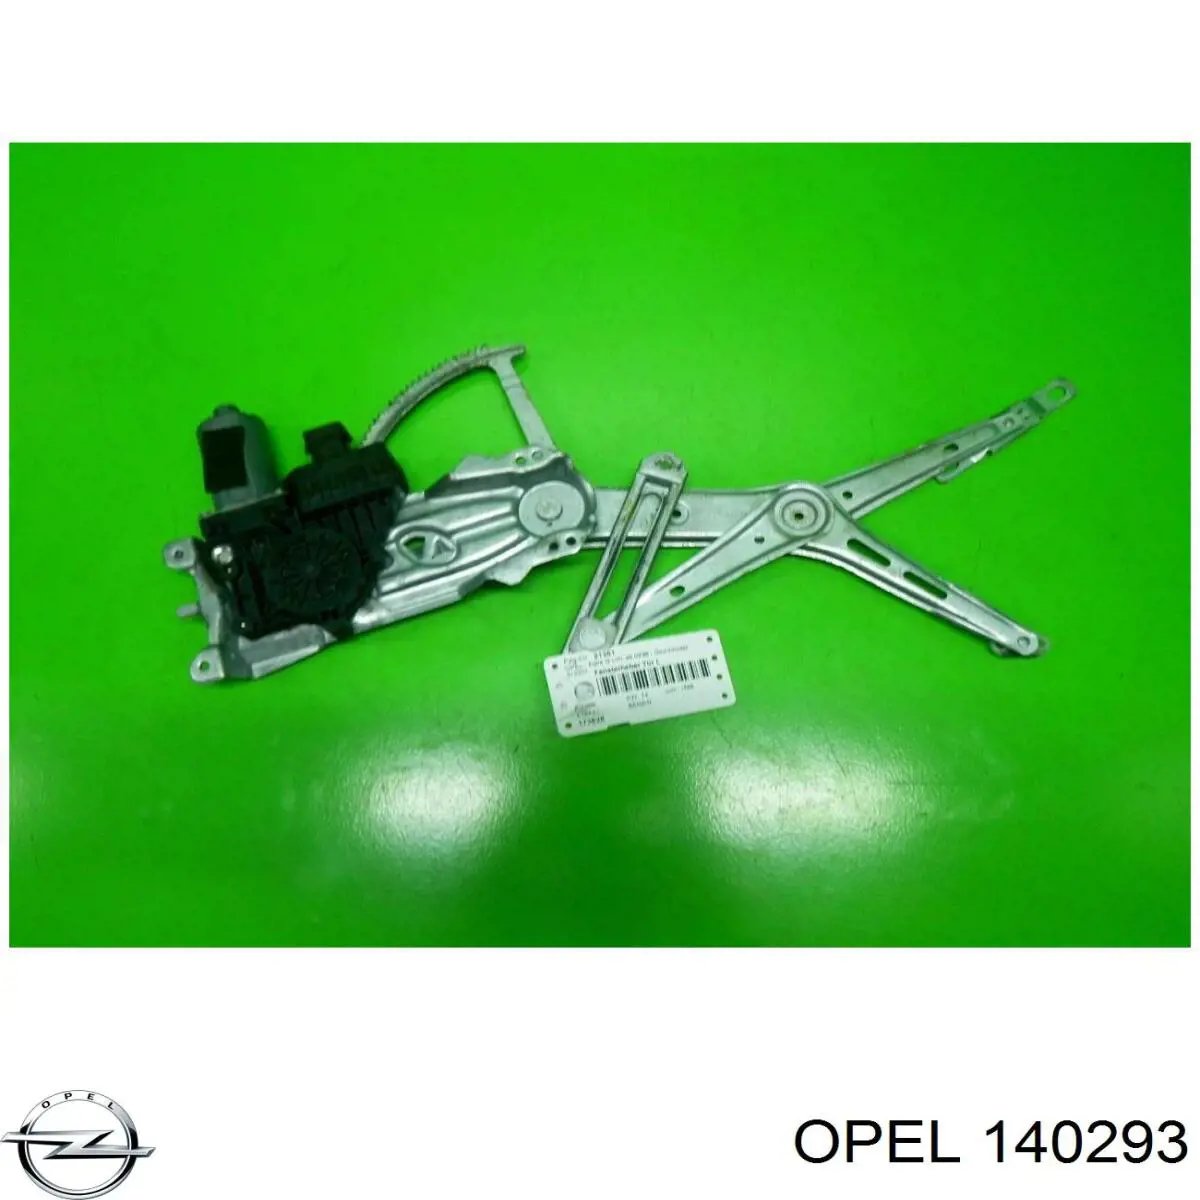 Mecanismo alzacristales, puerta delantera izquierda para Opel Astra (F69)